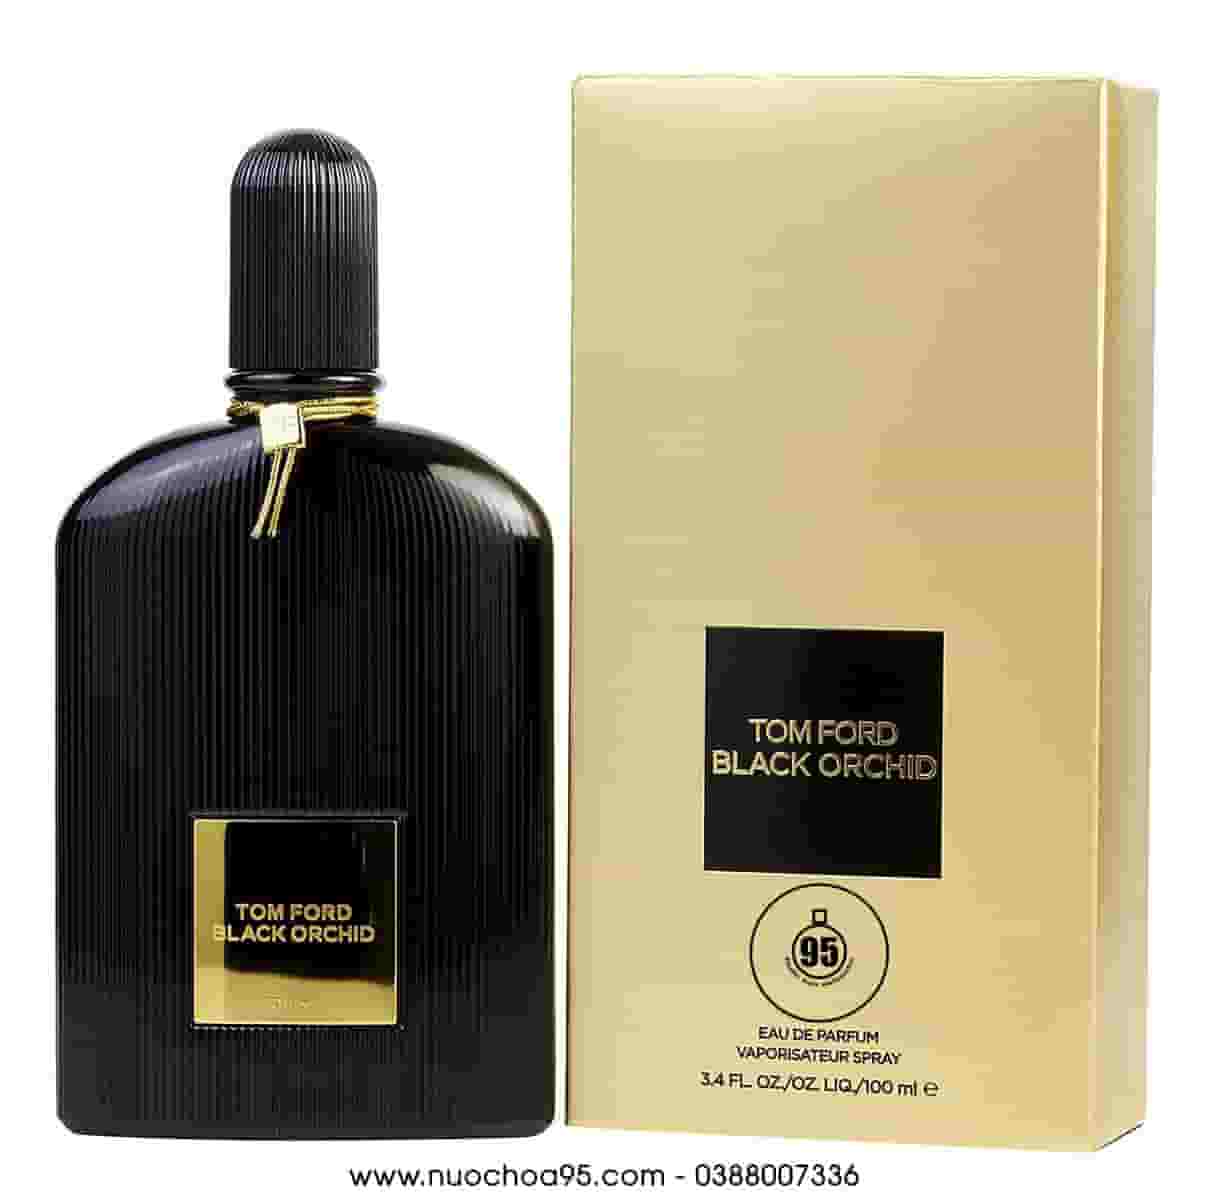 Nước hoa Tom Ford Black Orchid 